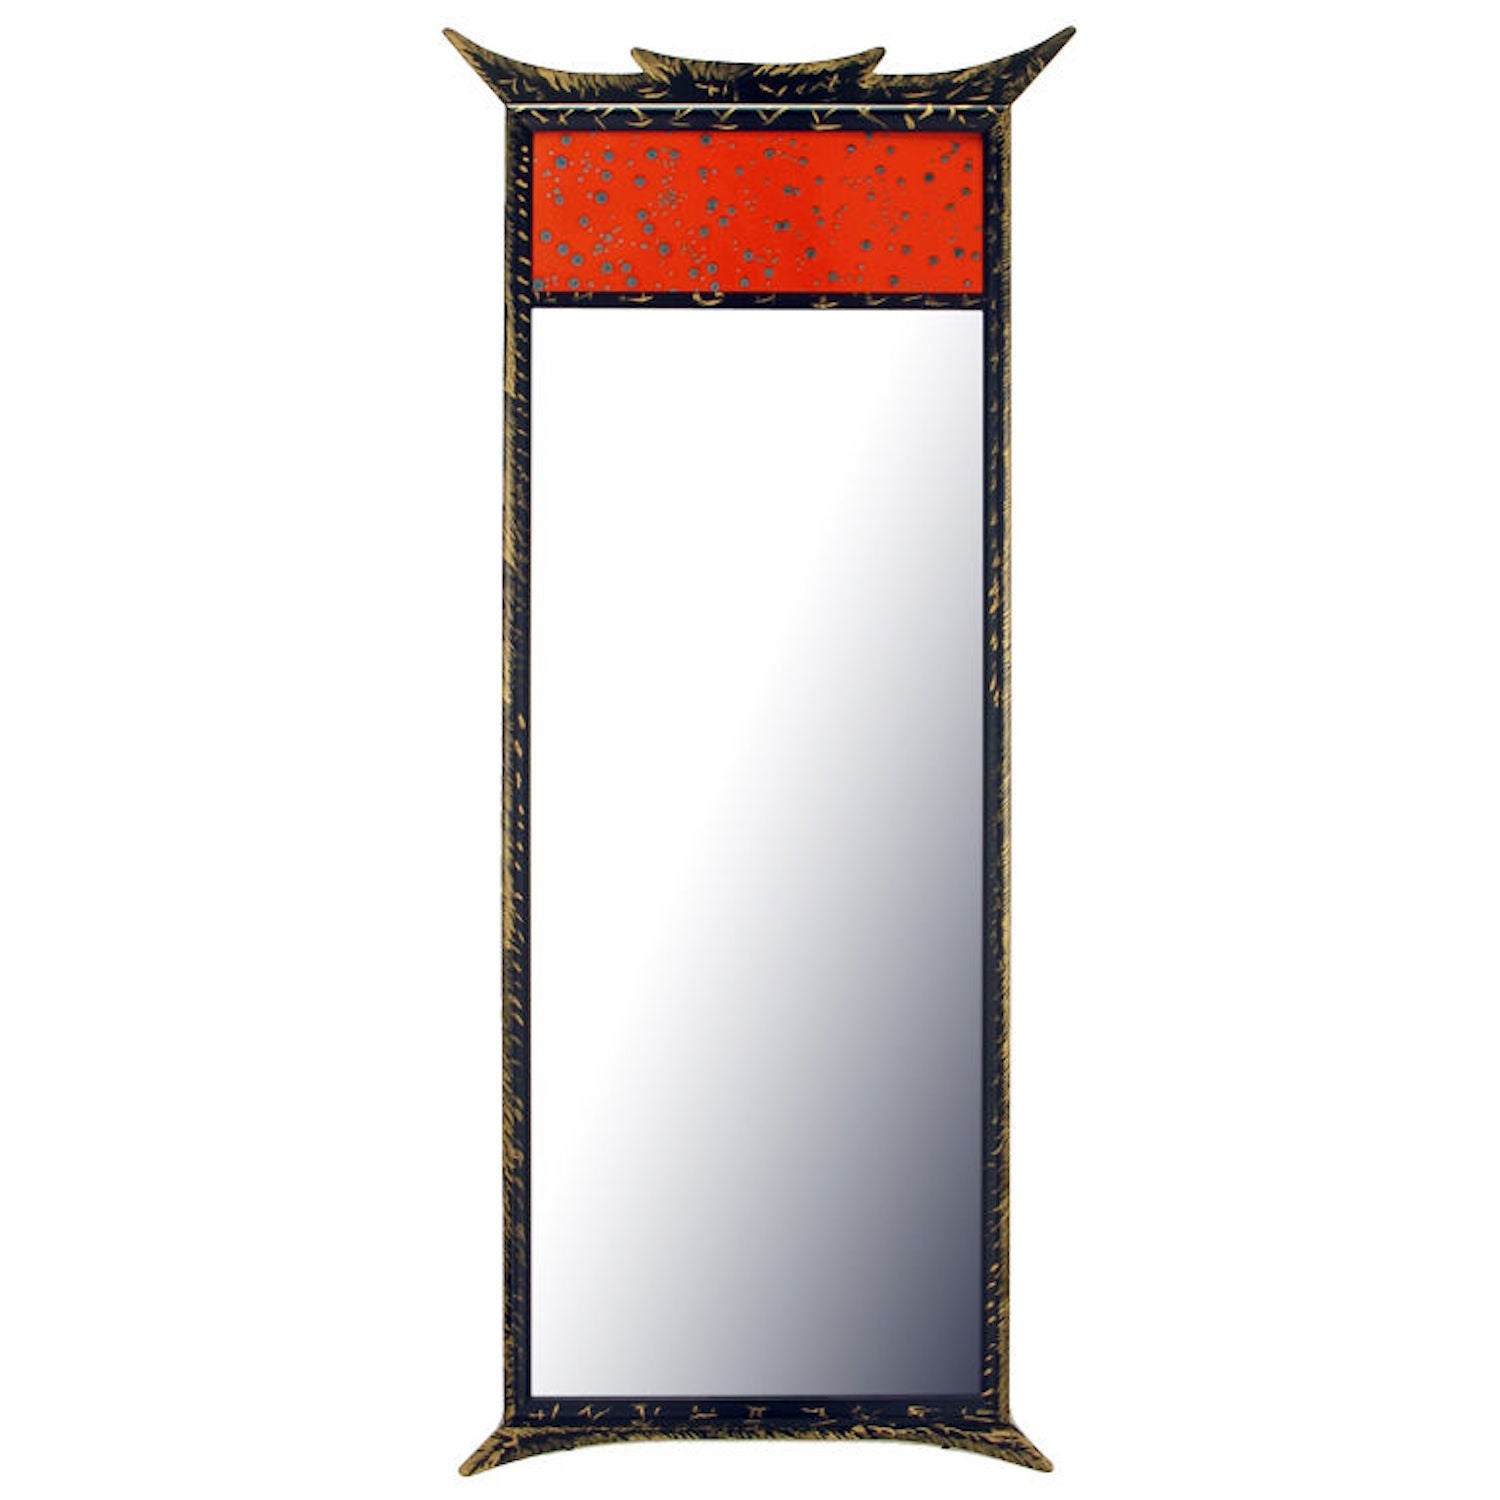 Miroir Trumeau à panneau émaillé de style pagode, doré à la feuille